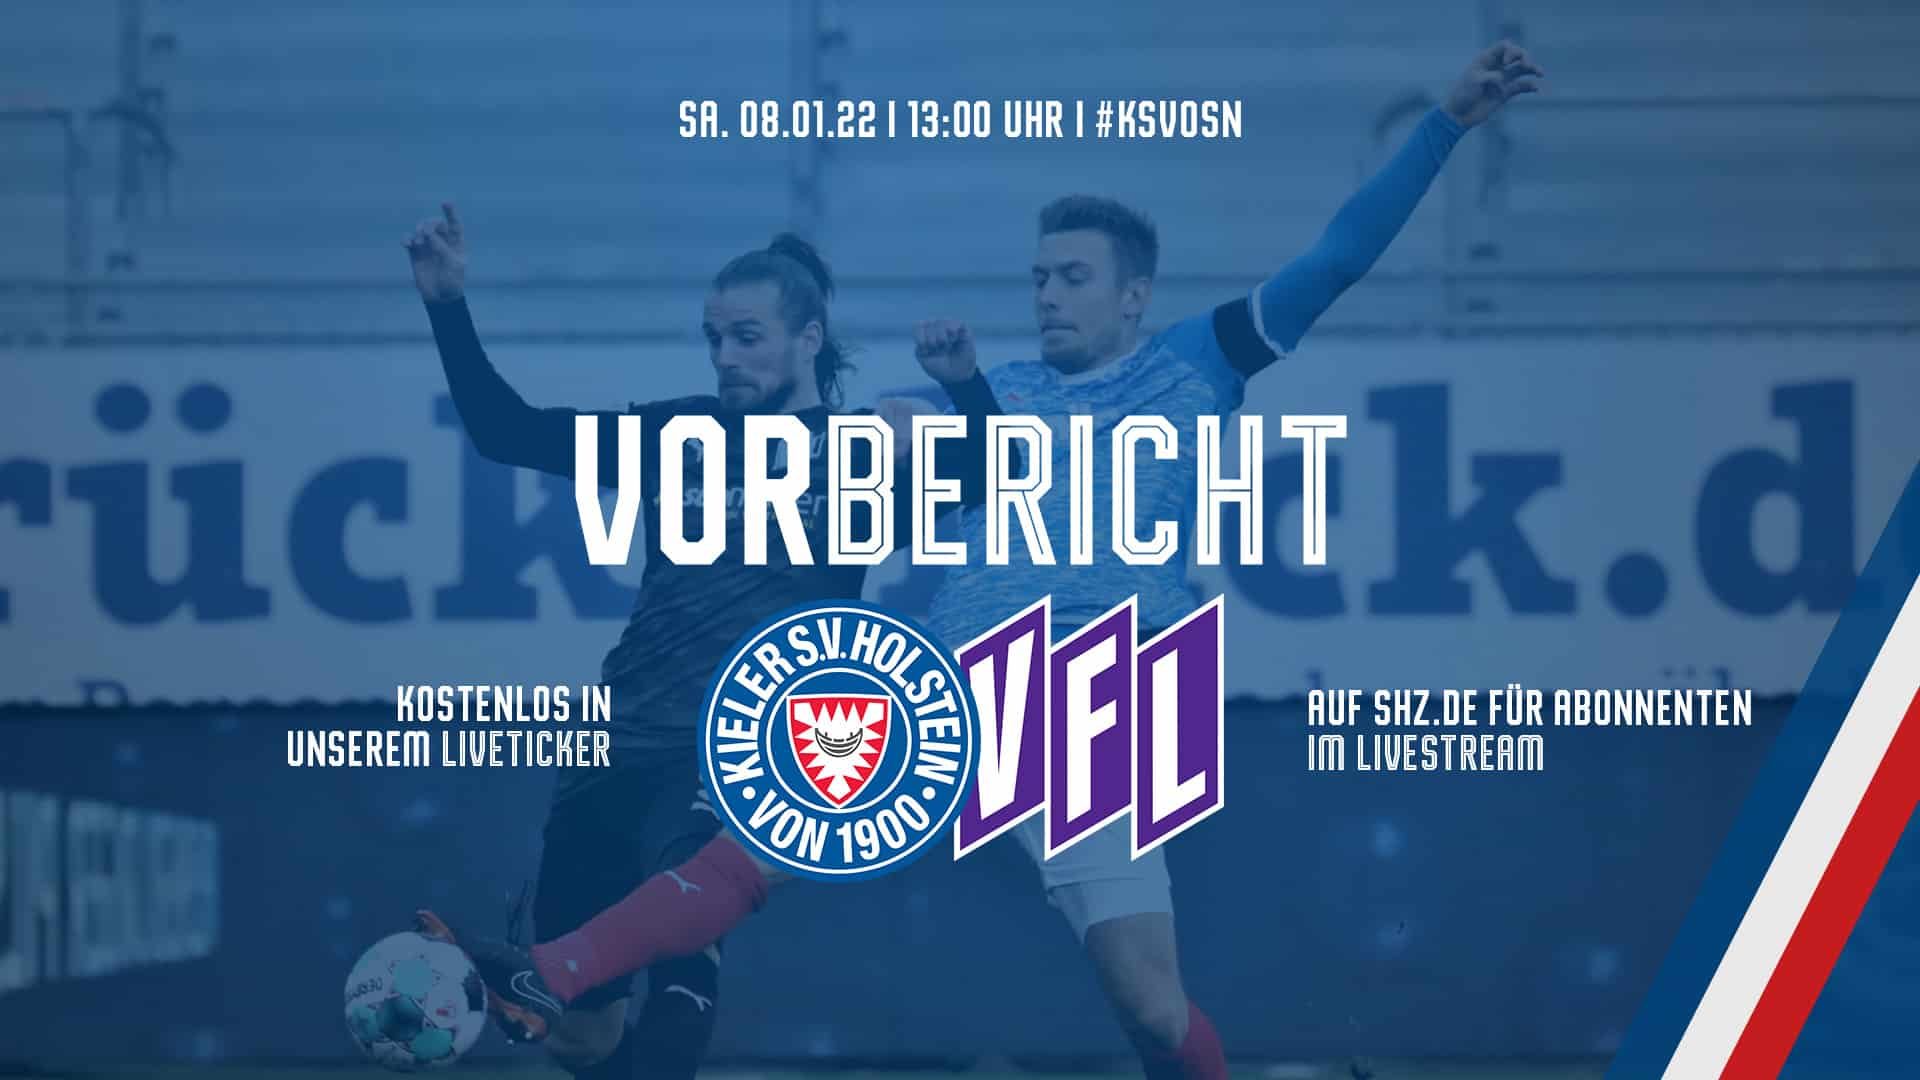 Generalprobe vor Ligastart KSV empfängt im Testspiel den VfL Osnabrück